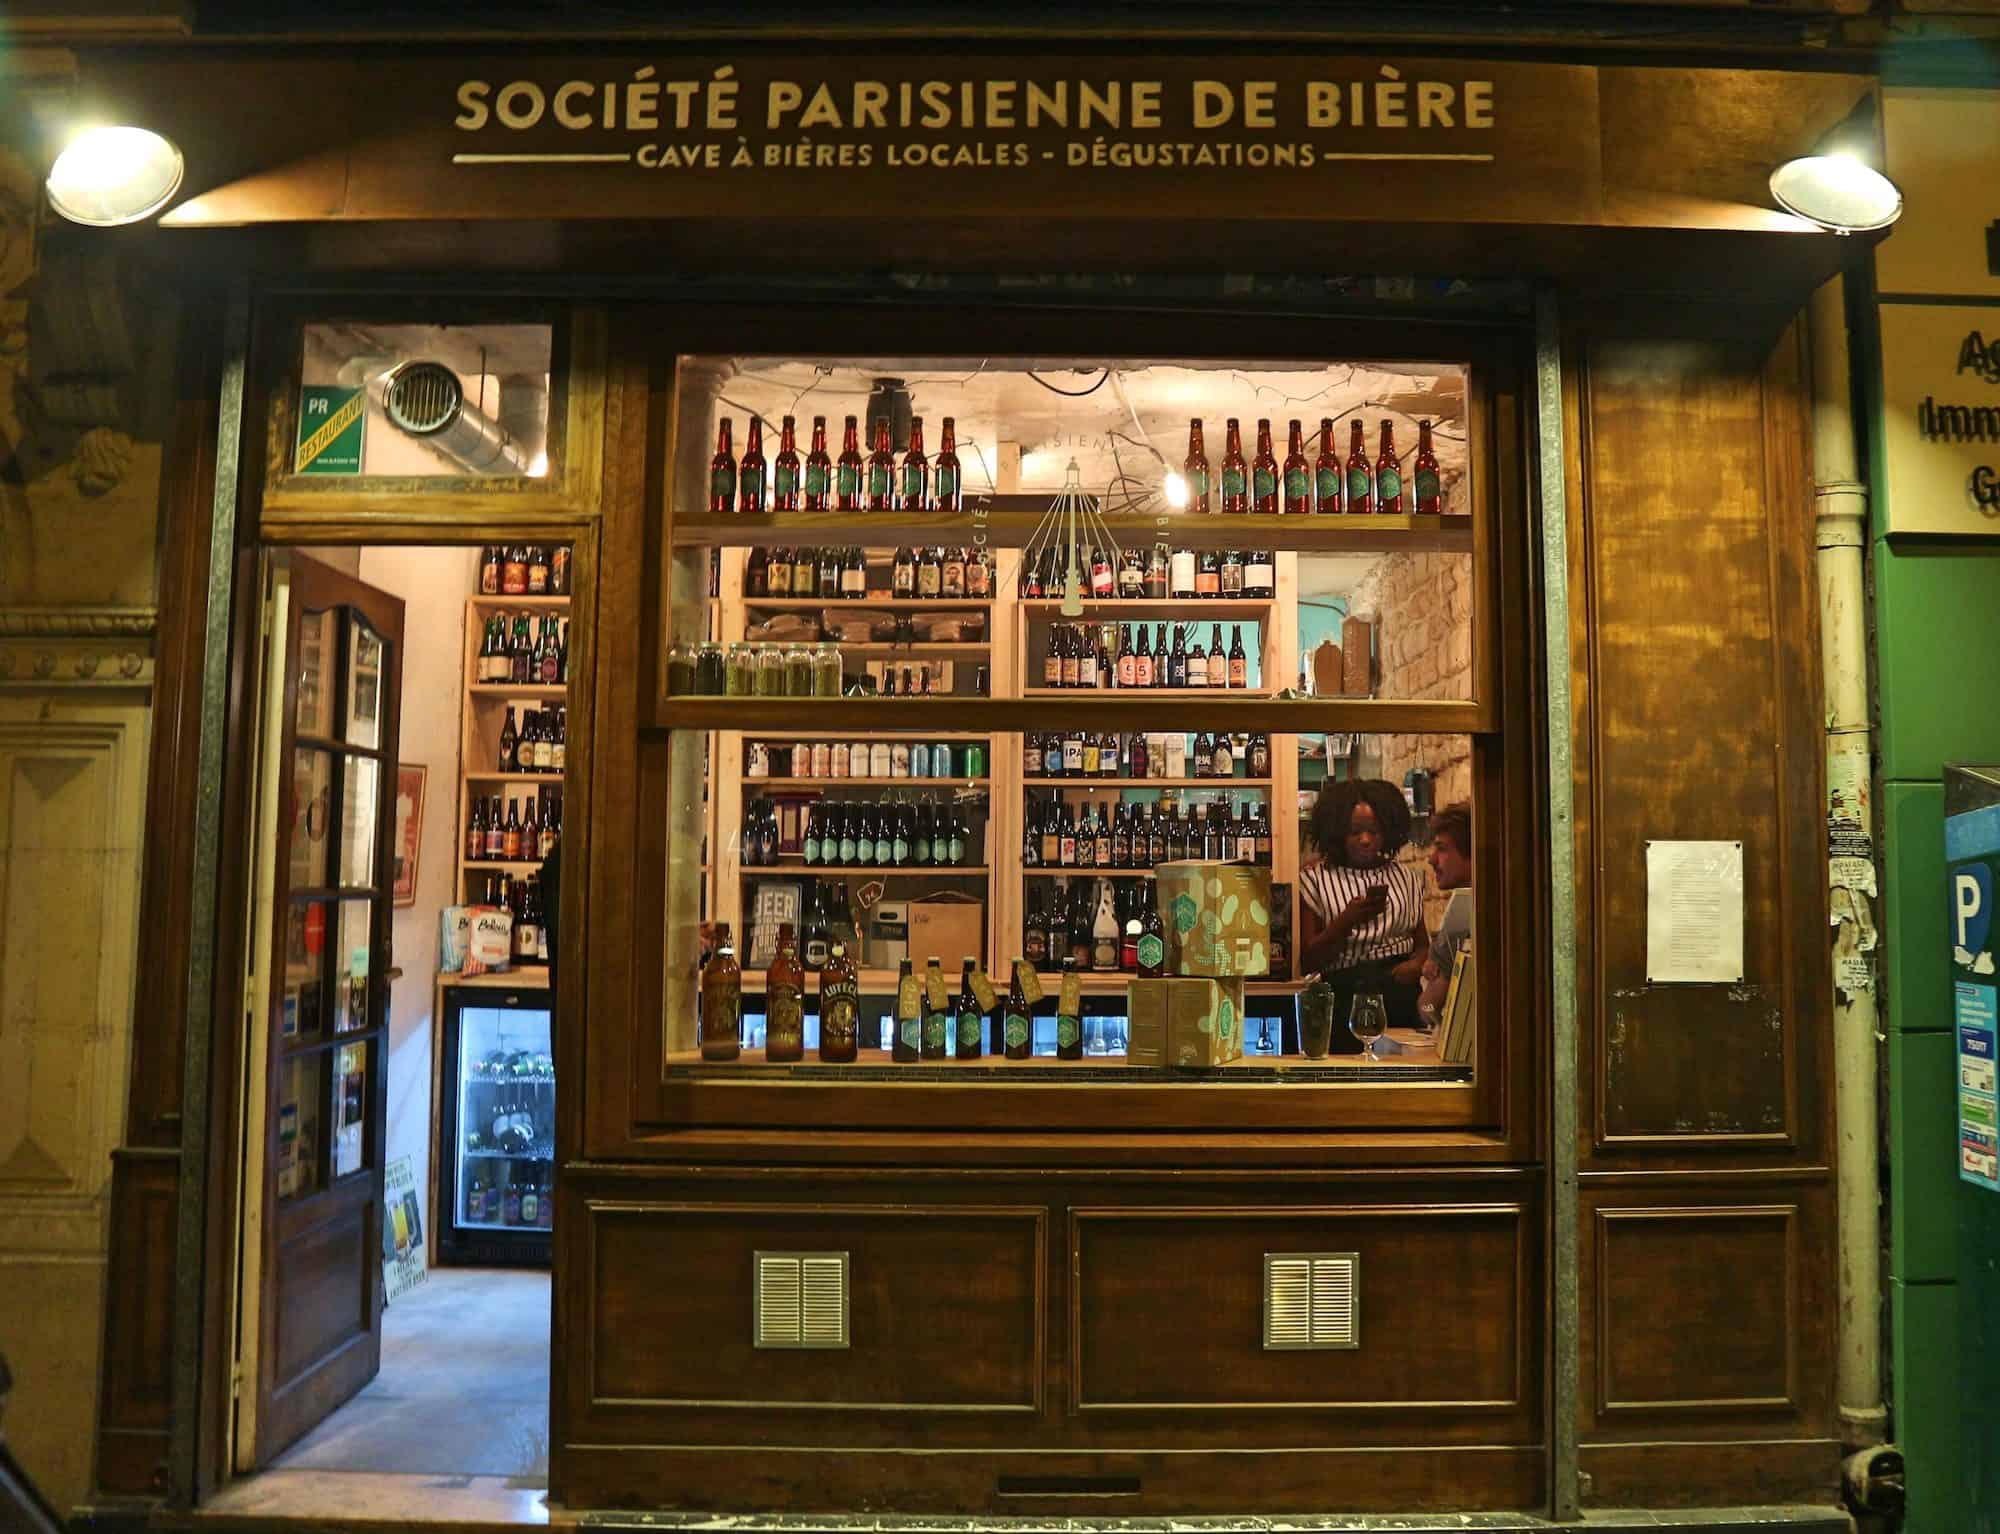 Craft beer shop in Paris, La Société Parisienne de Bière in the Batignolles neighborhood with its artisanal wooden facade.